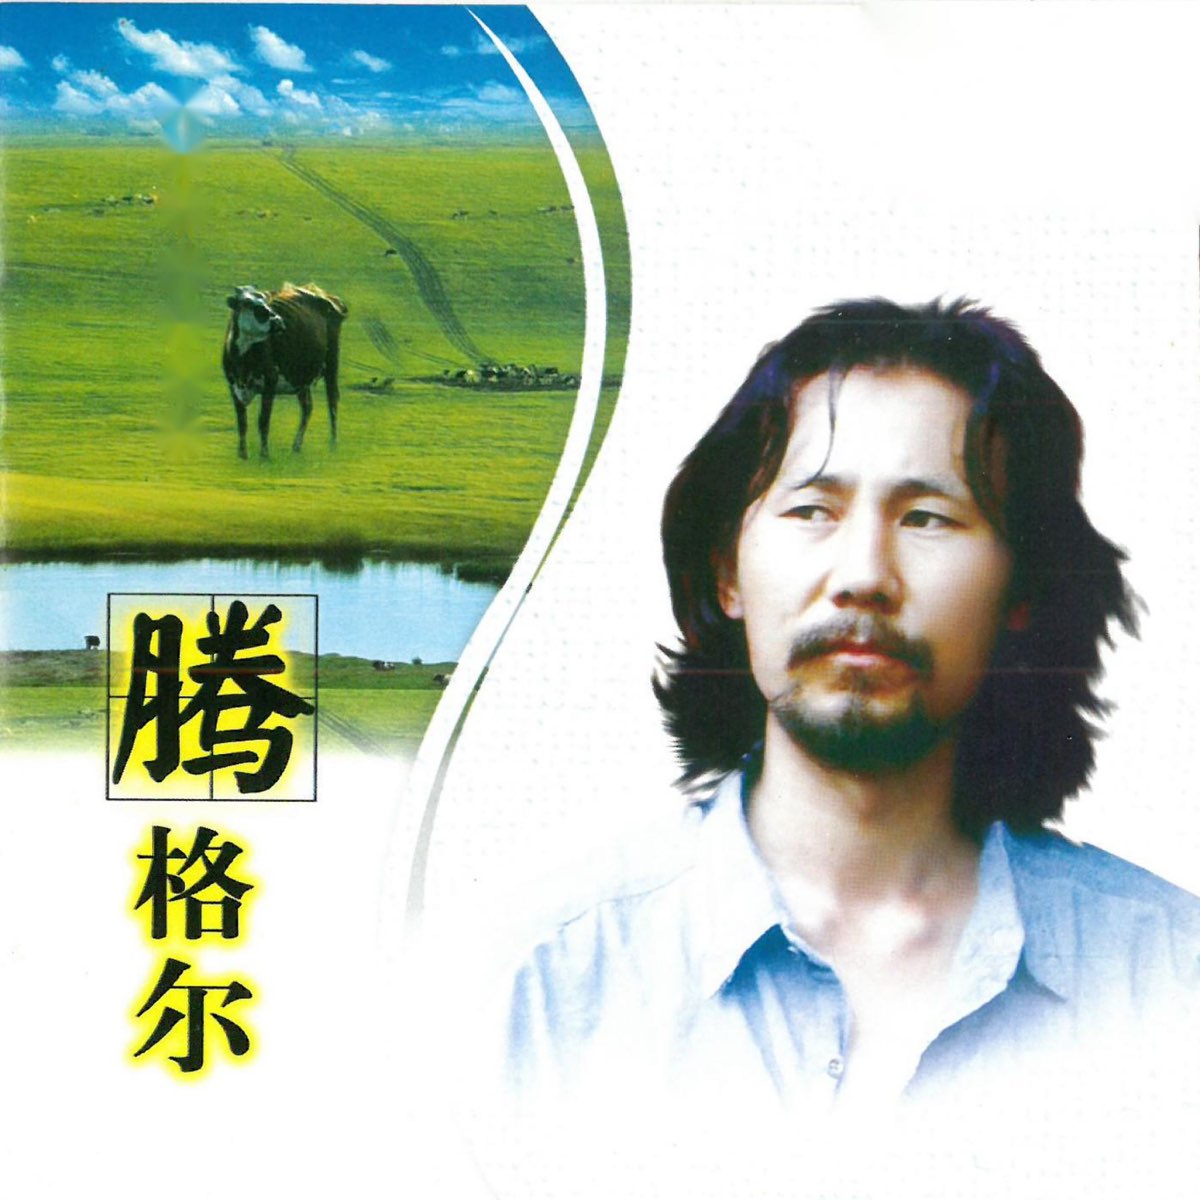 ‎Apple Music 上腾格尔的专辑《蒙古人》